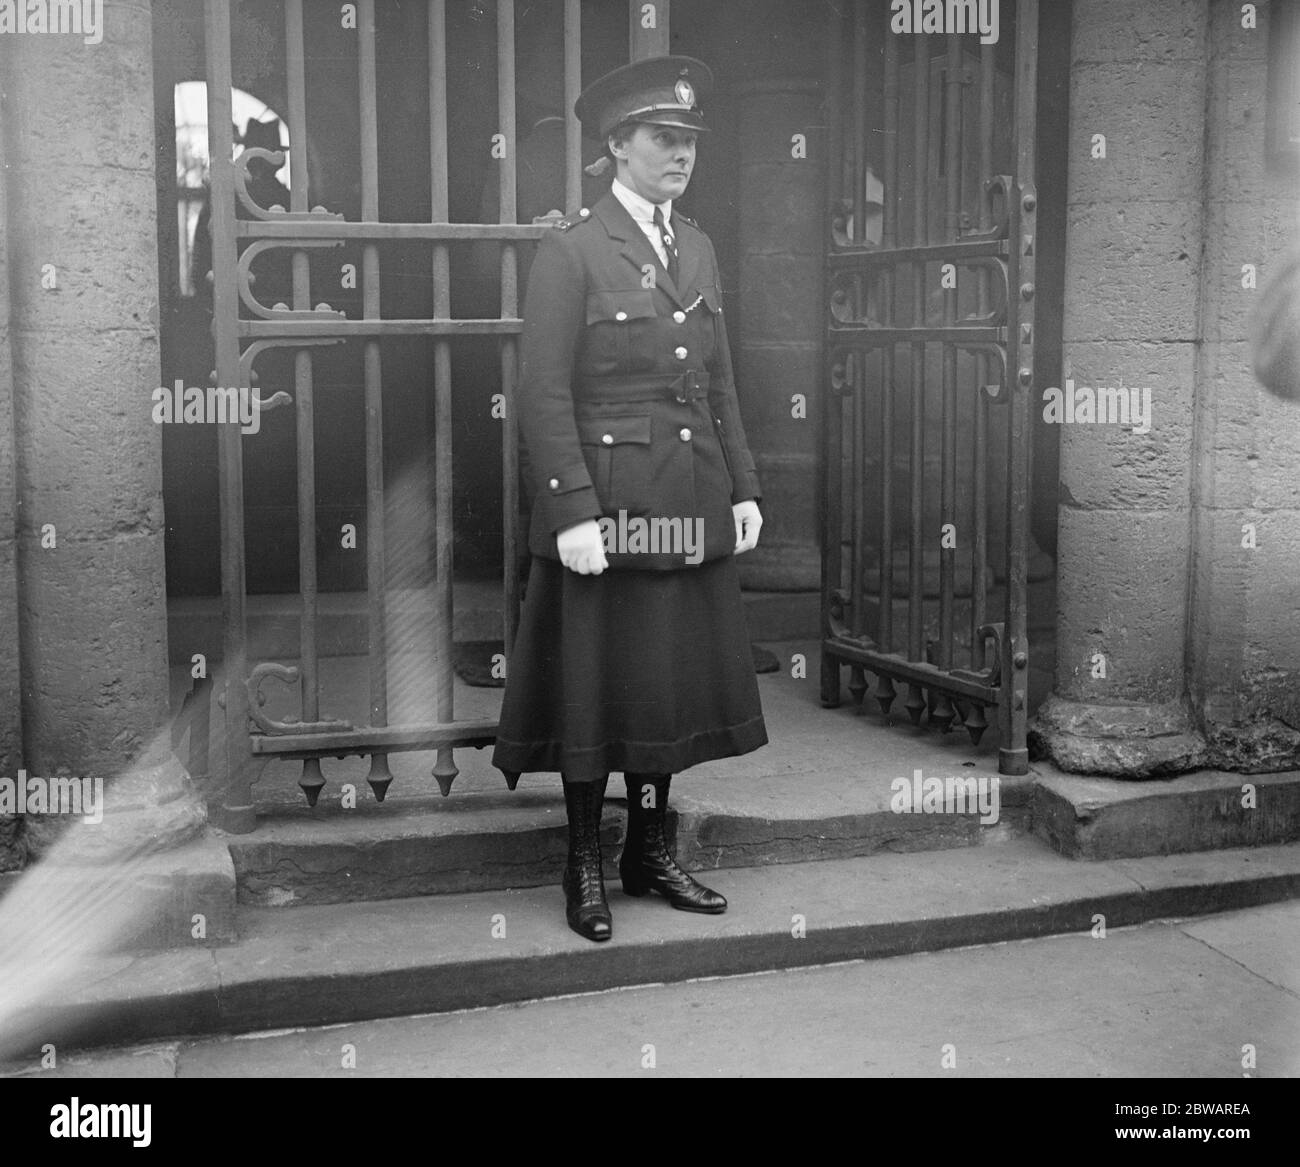 Acusador de la Sra. Gouding acusado: Sra. Gladys Moss, la policía mencionada en el caso de la acusación el 27 de octubre de 1921 Foto de stock